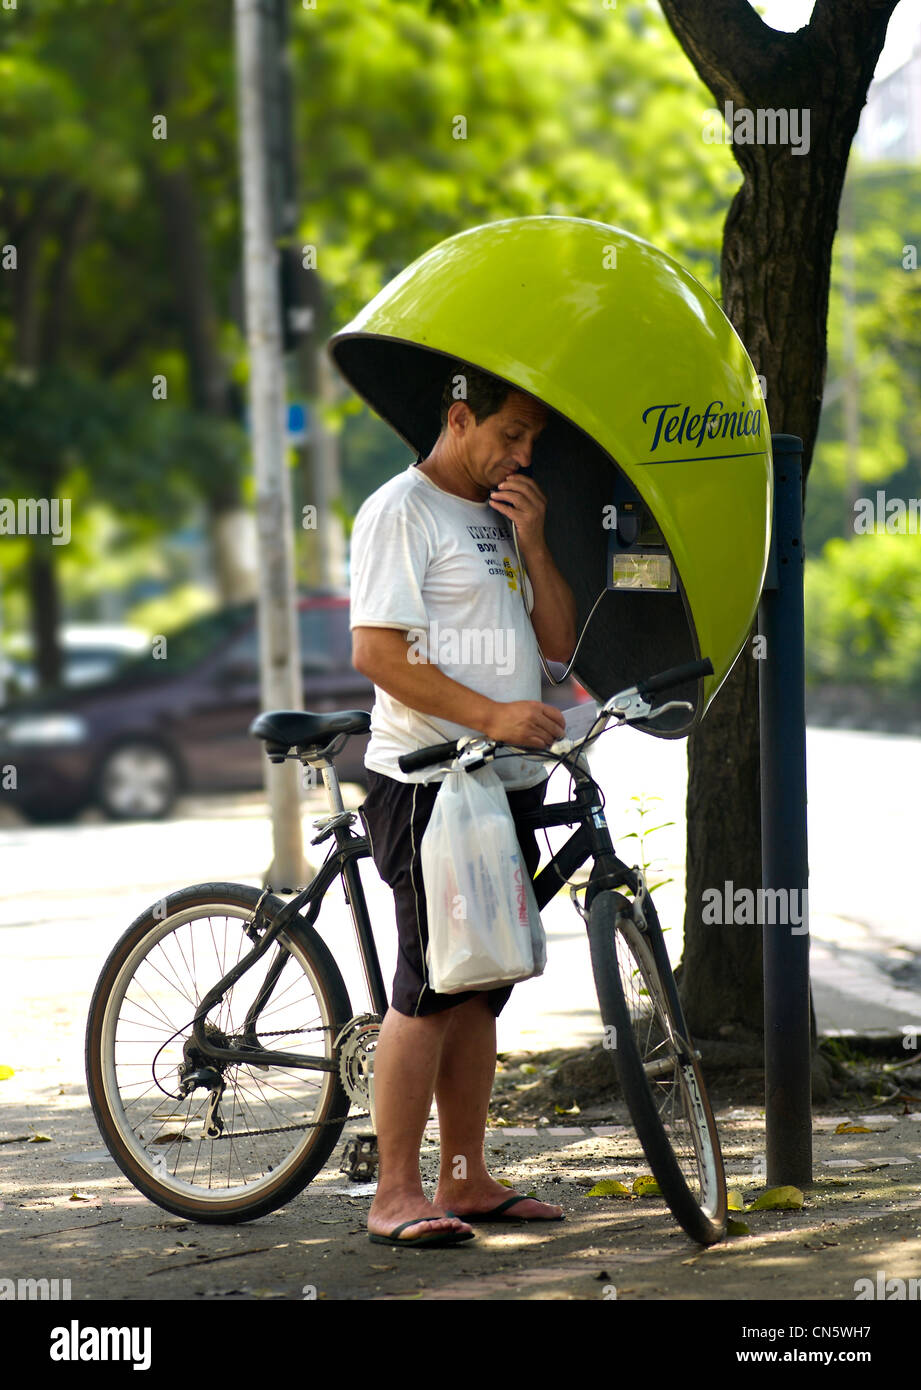 Brasilien, Sao Paulo, feature: São Paulo vertraulich, Mann, Radfahren, Telefonzelle Stockfoto